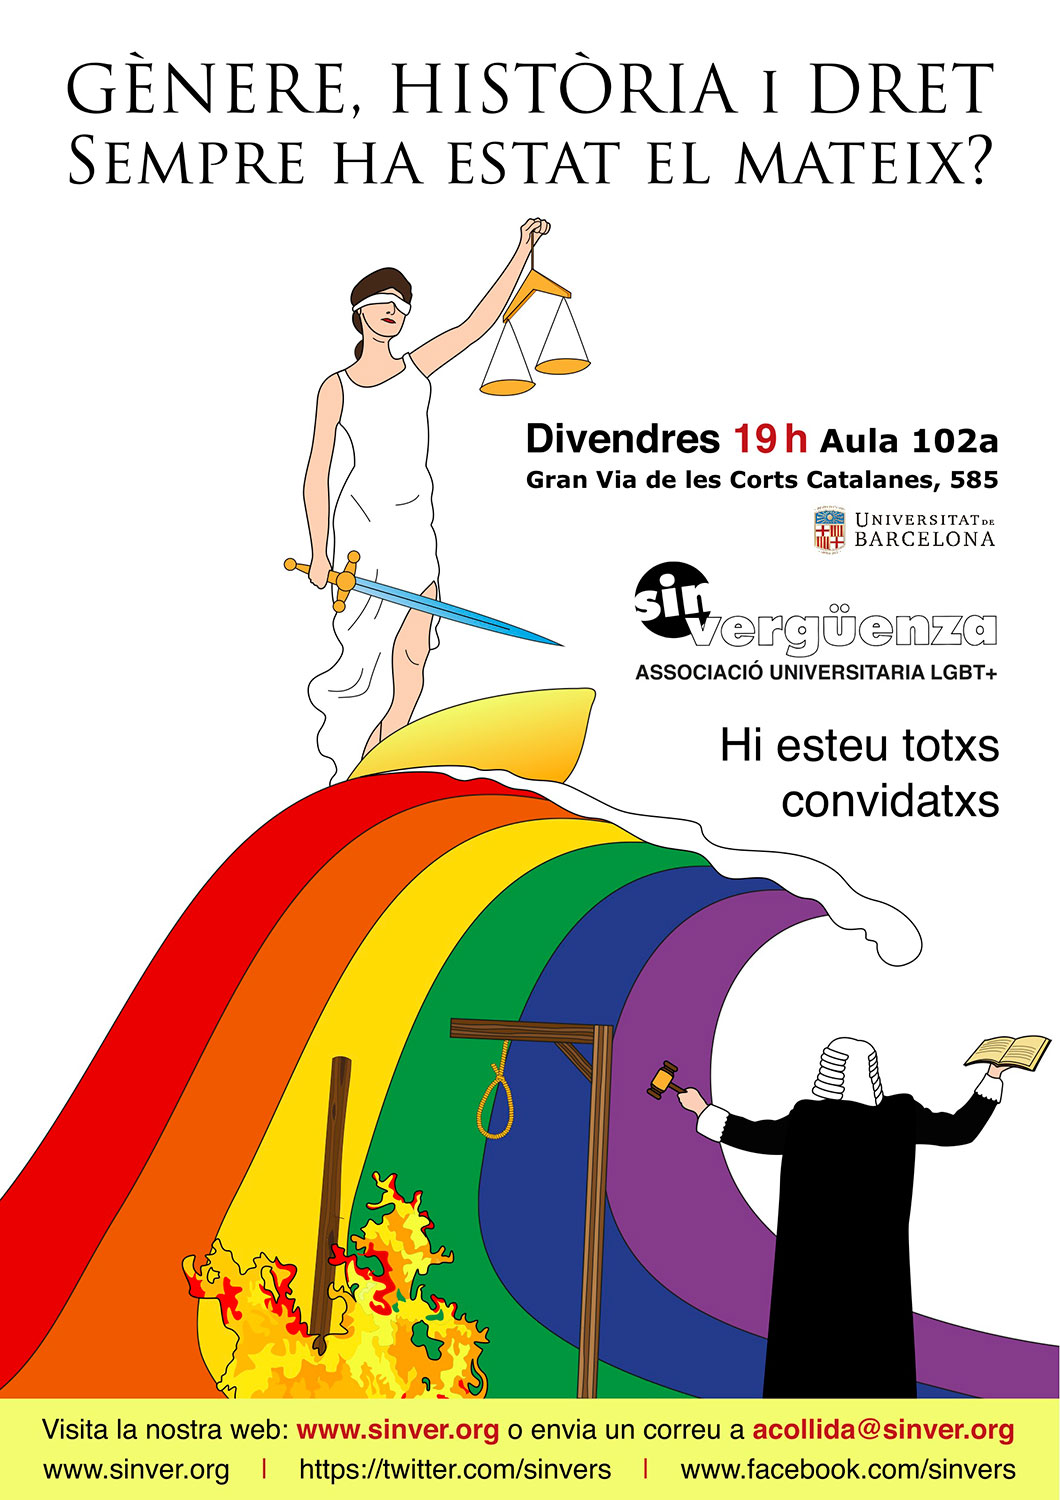 Cartell publicitari de l'activitat "Gènere, història i dret. Sempre ha estat el mateix?", per a l'associació universitaria Sin vergüenza (Illustrator).